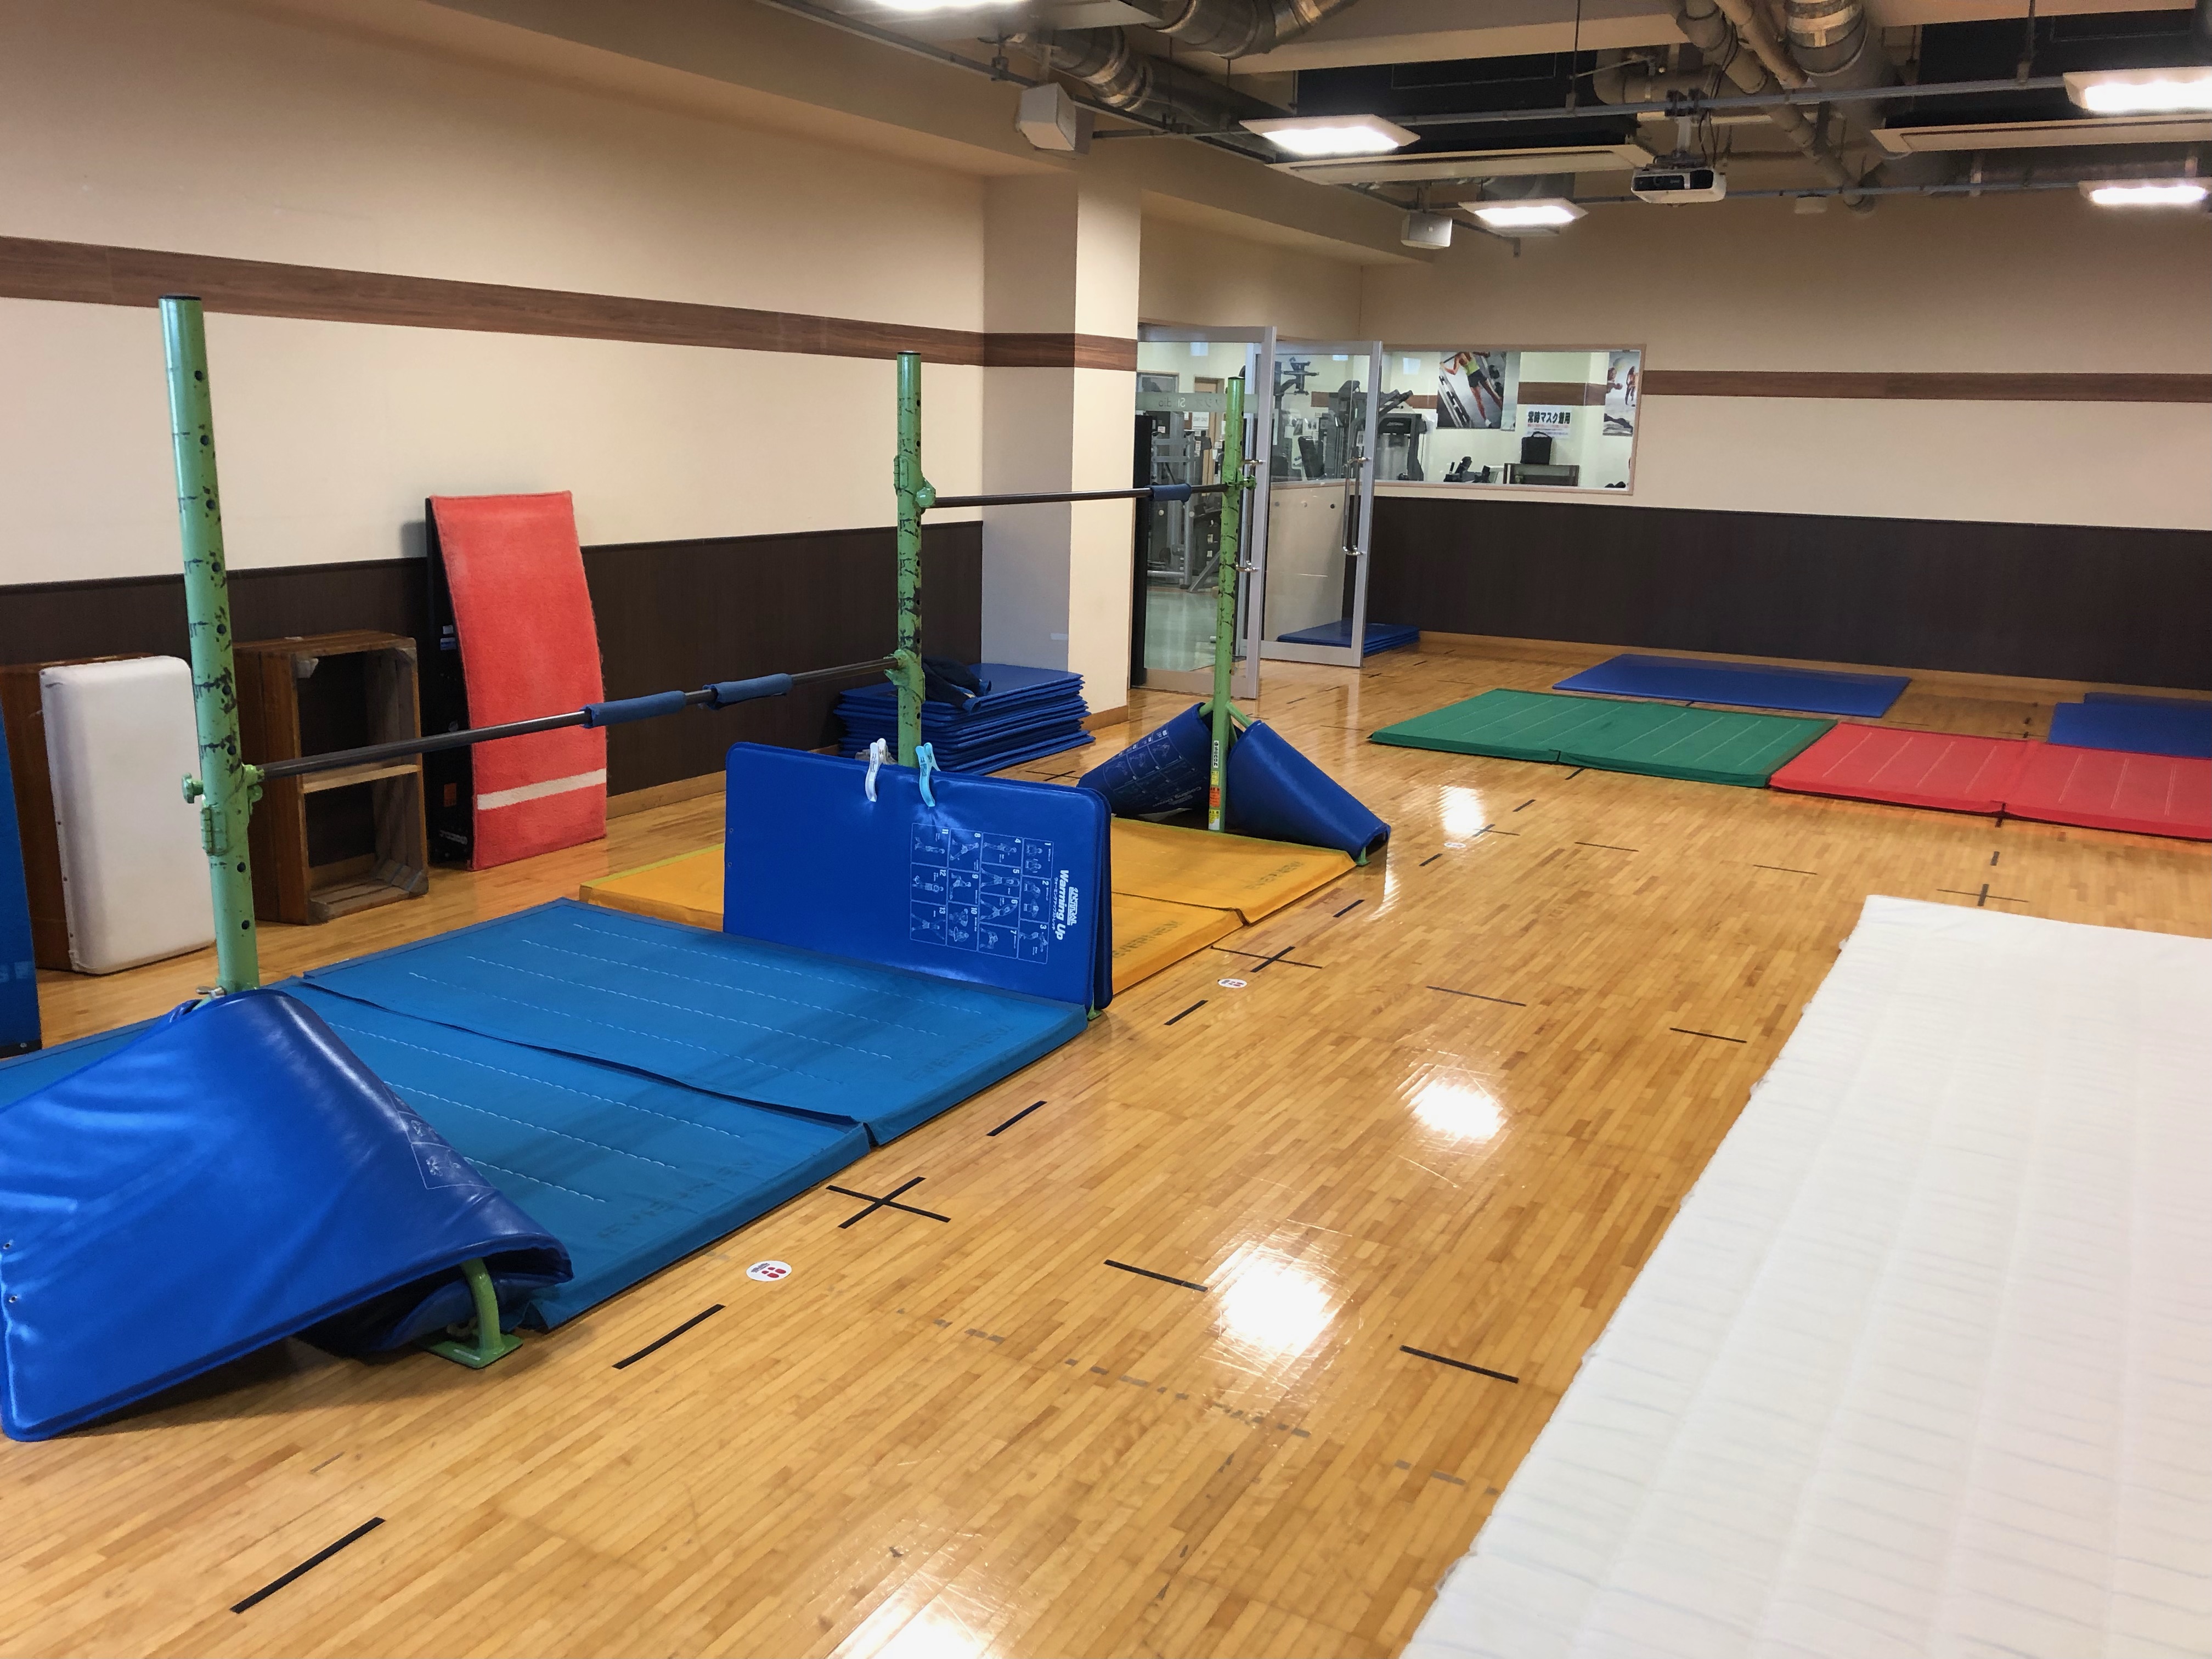 〈体操場〉トレーニング室にあるスタジオにて体育教室を実施しています。